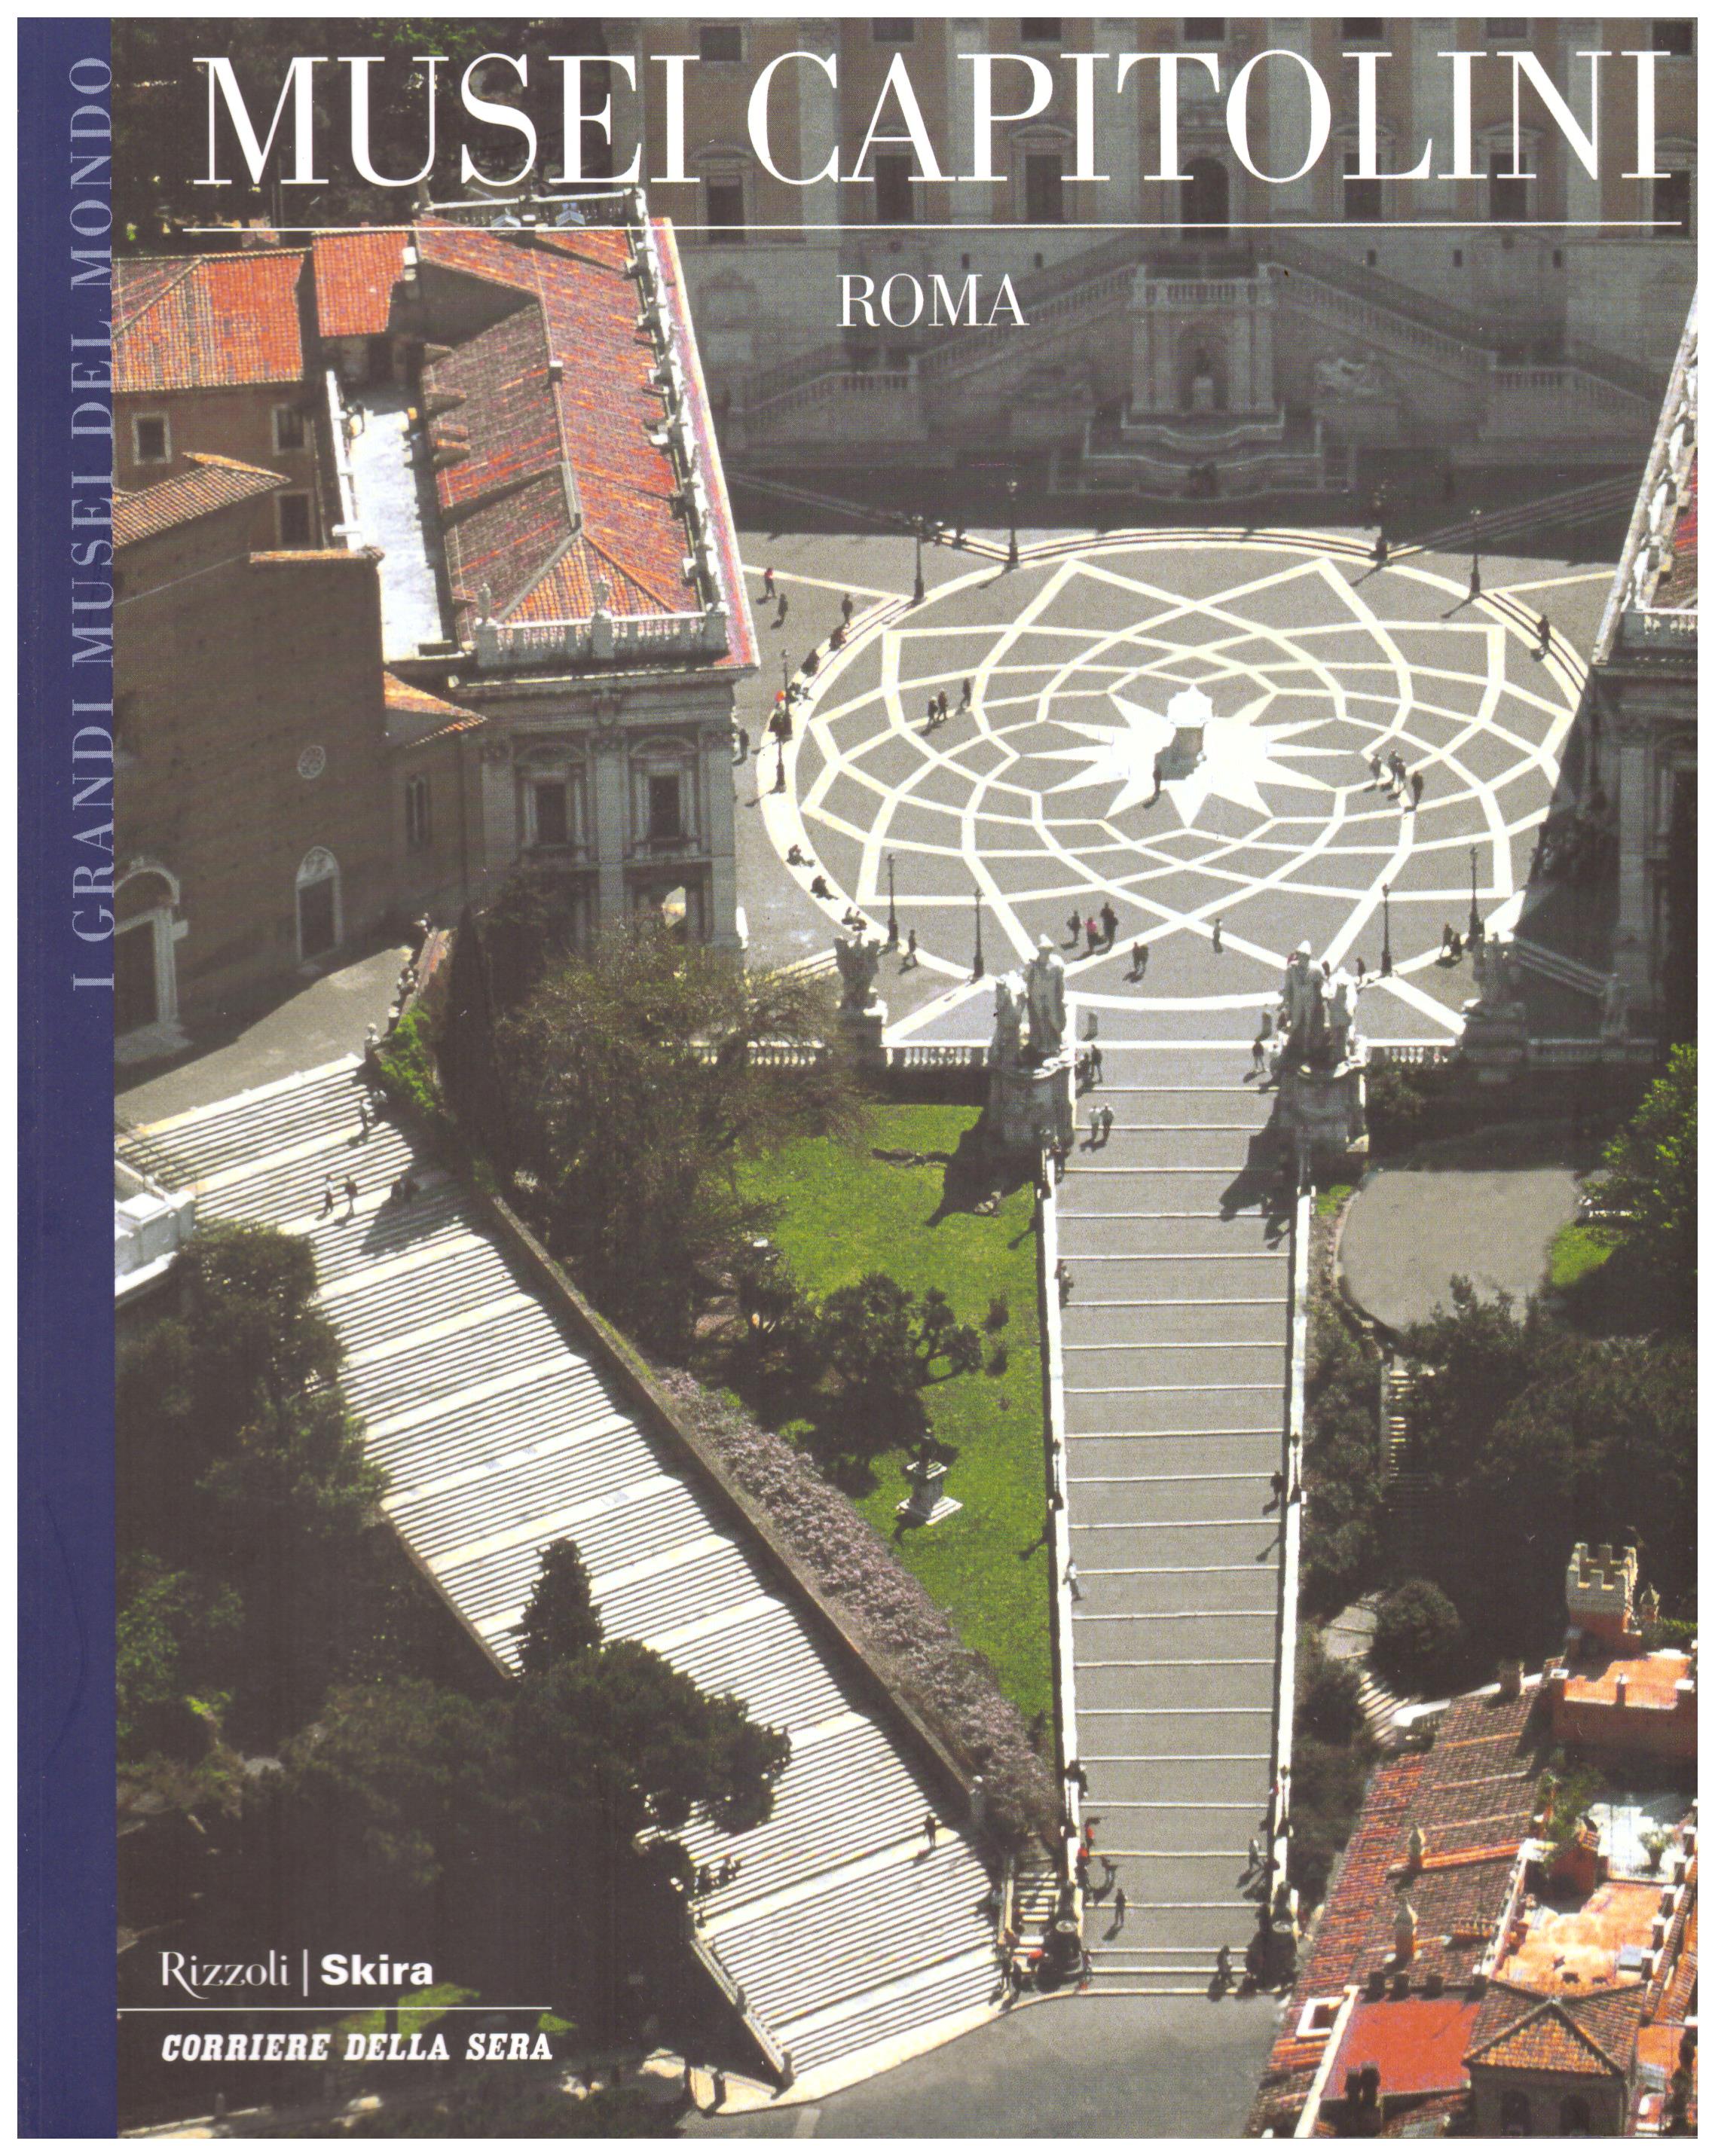 Titolo: I grandi musei del mondo, Musei Capitolini  Roma  Autore : AA.VV. Editore: Rizzoli Skira, Corriere della Sera 2006